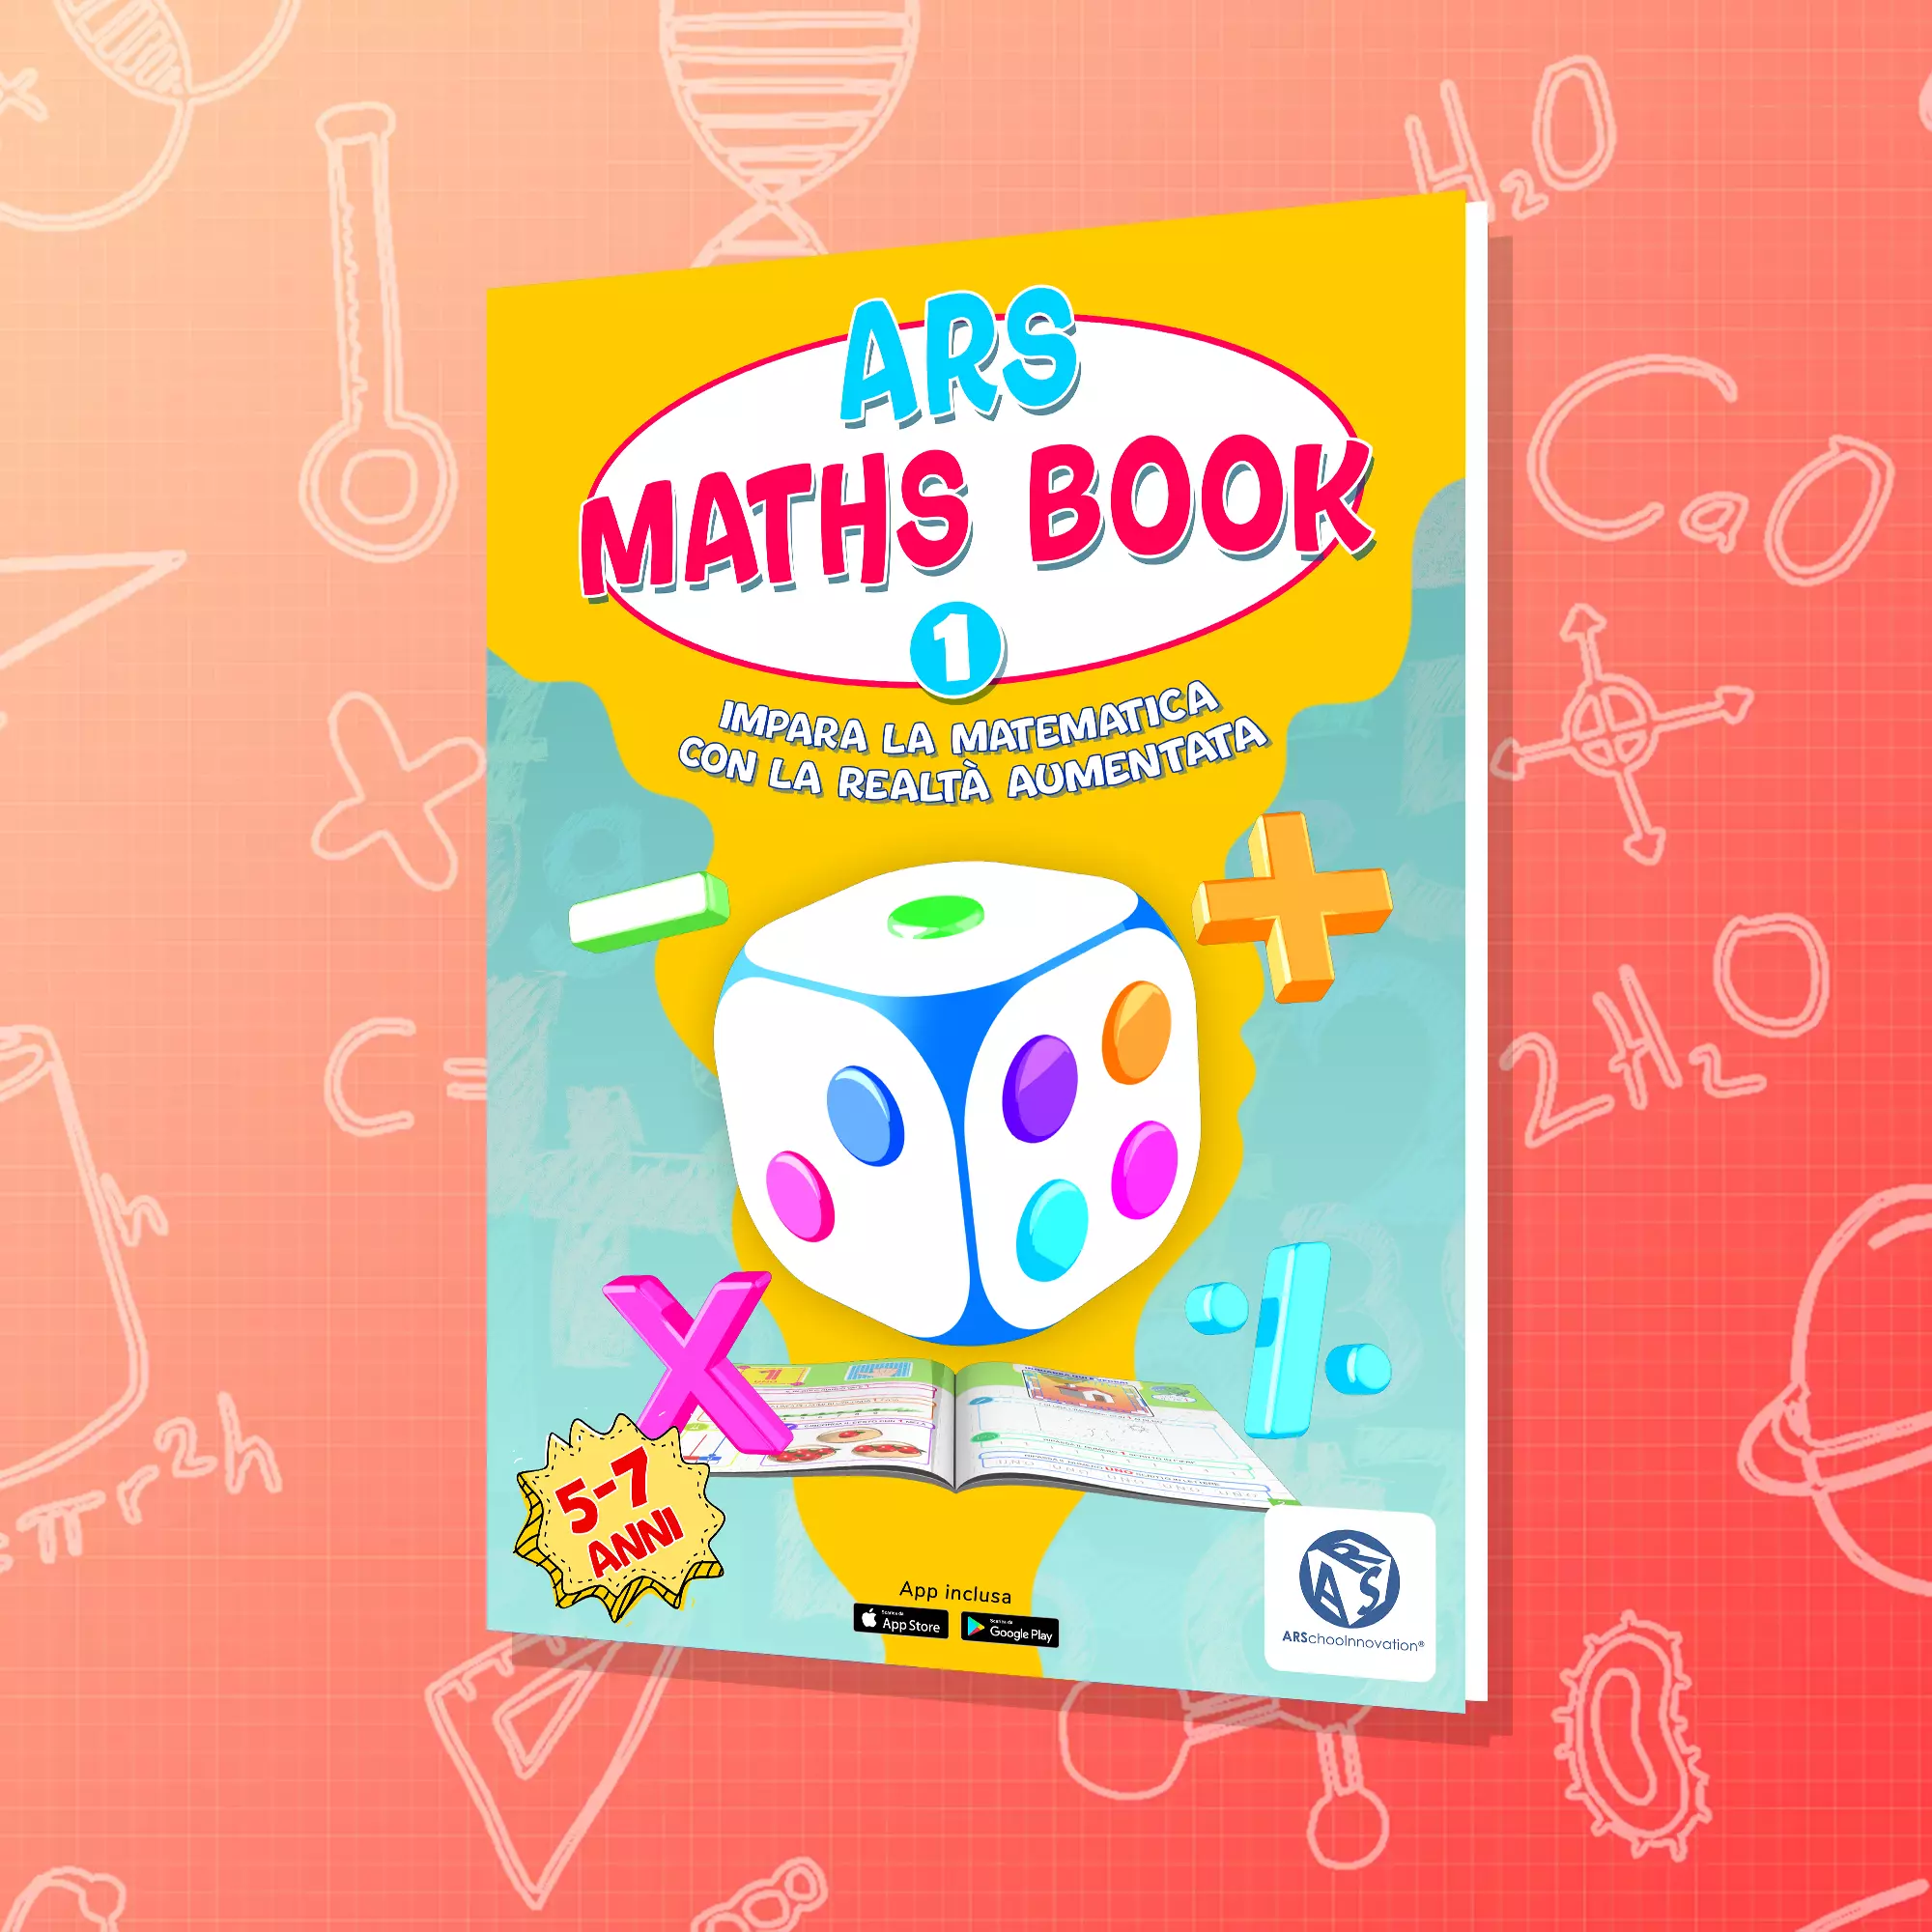 ARS Maths Book 1 Libro didattico e interattivo di Matematica